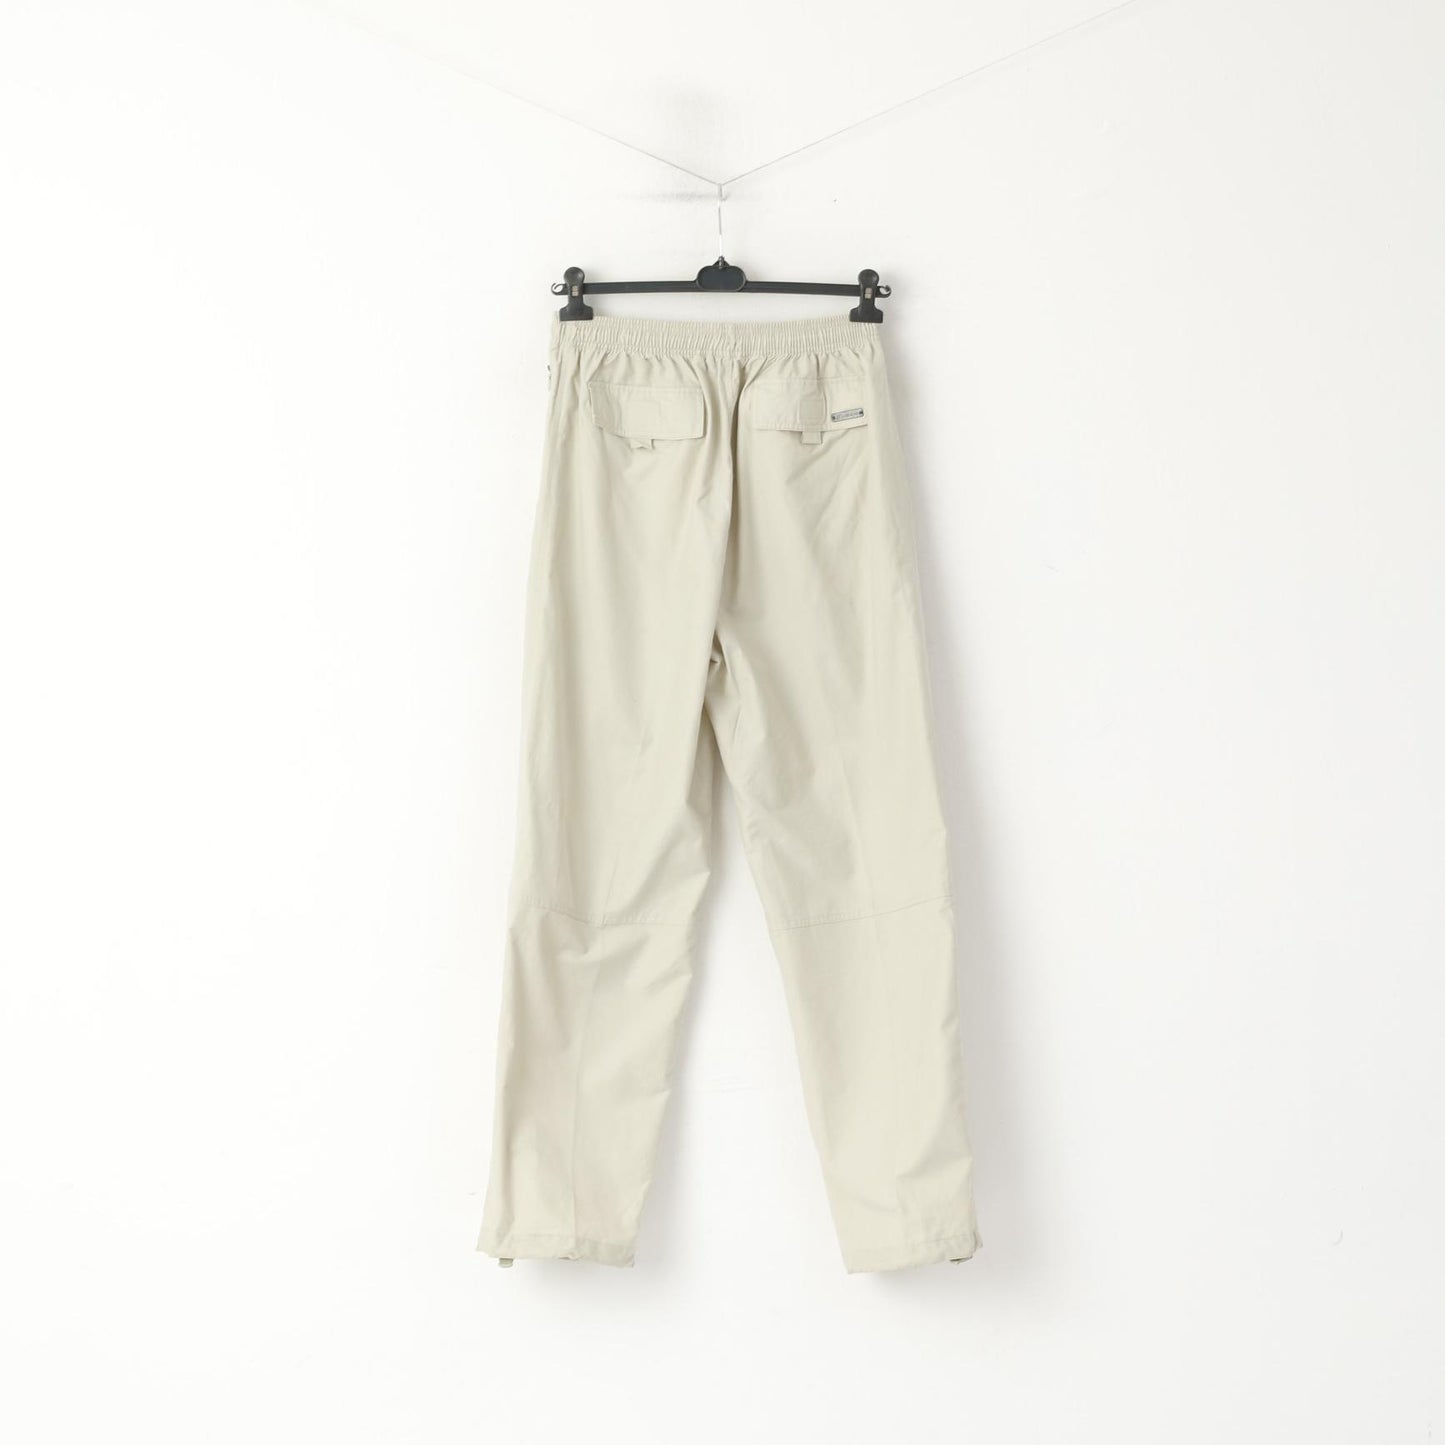 HEAD Men L Trousers Beige Cotton Vintage Nylon Blend Pockets Casuals Pants